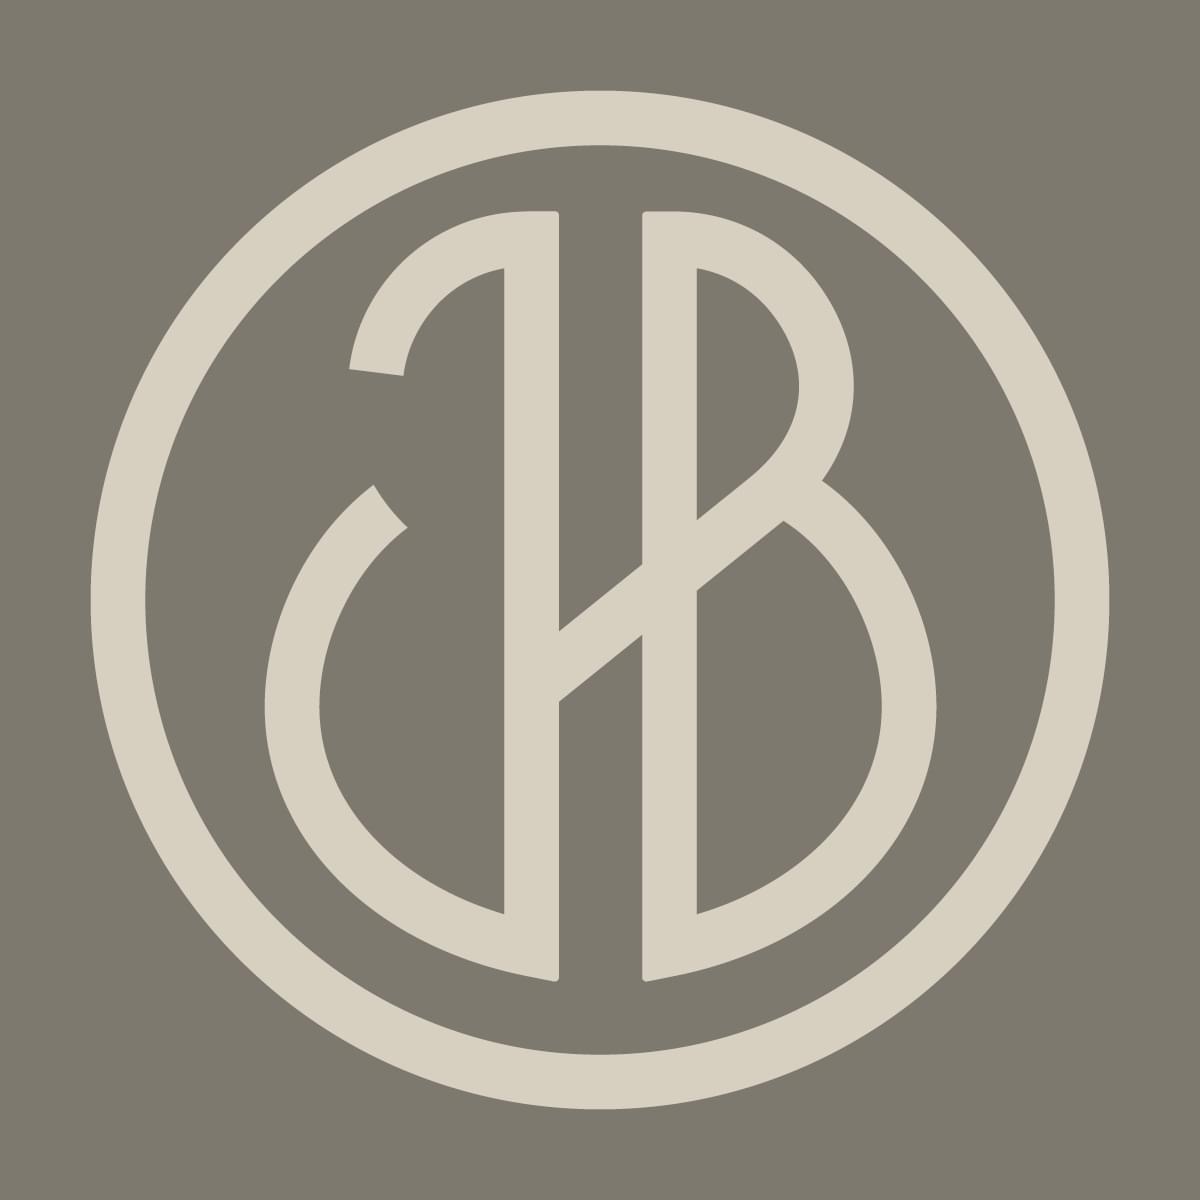 Logotyp för JHB - Johan i Hallen & Bergfalk